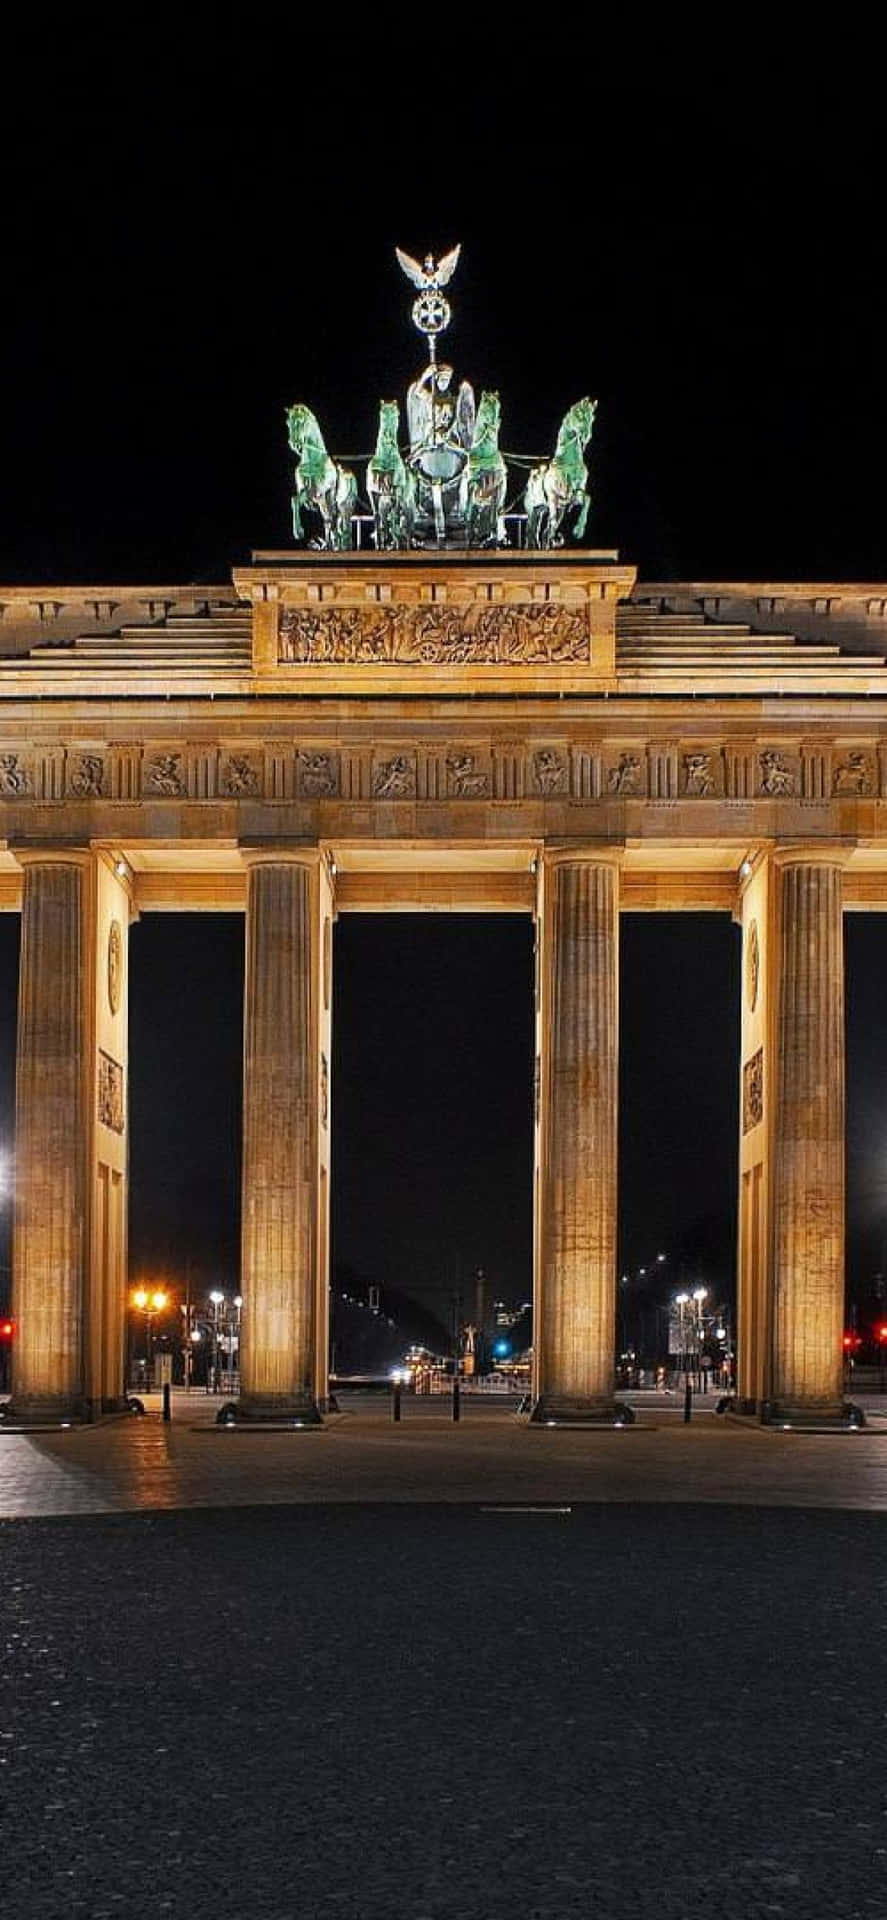 Brandenburg Gate Evening View Picture